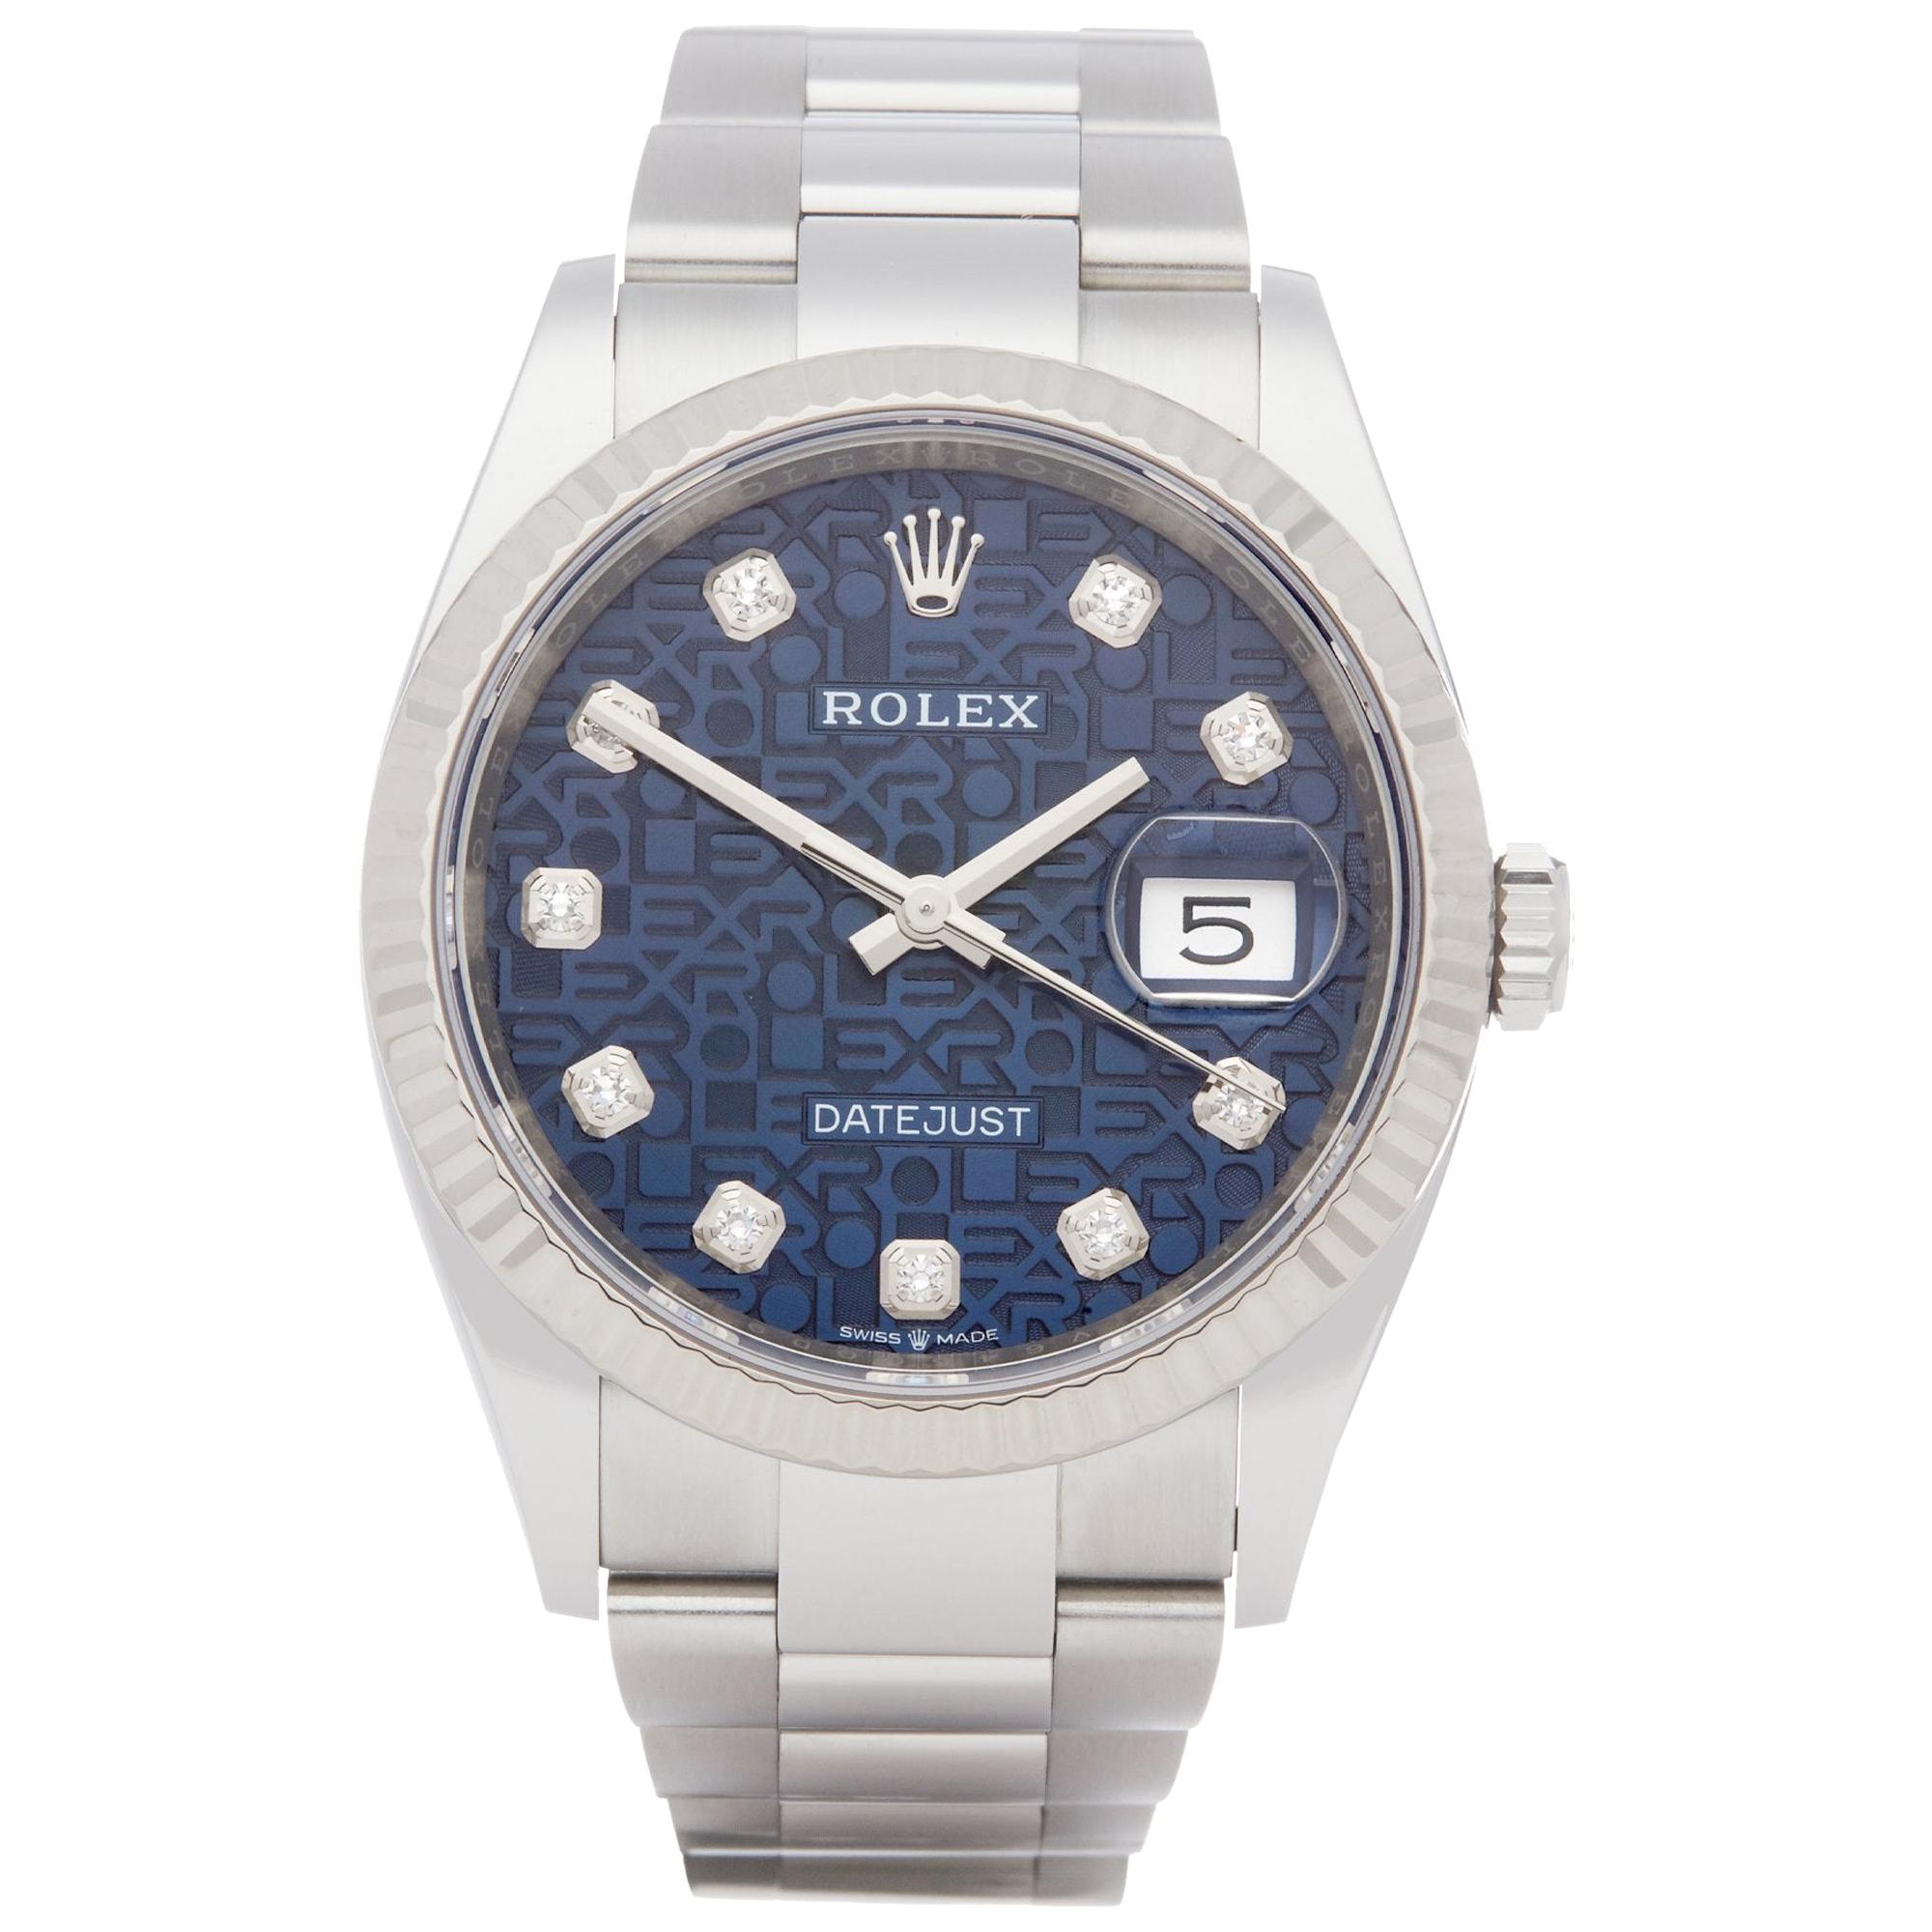 Rolex Datejust 36 126234 Unisex Stainless Steel Watch